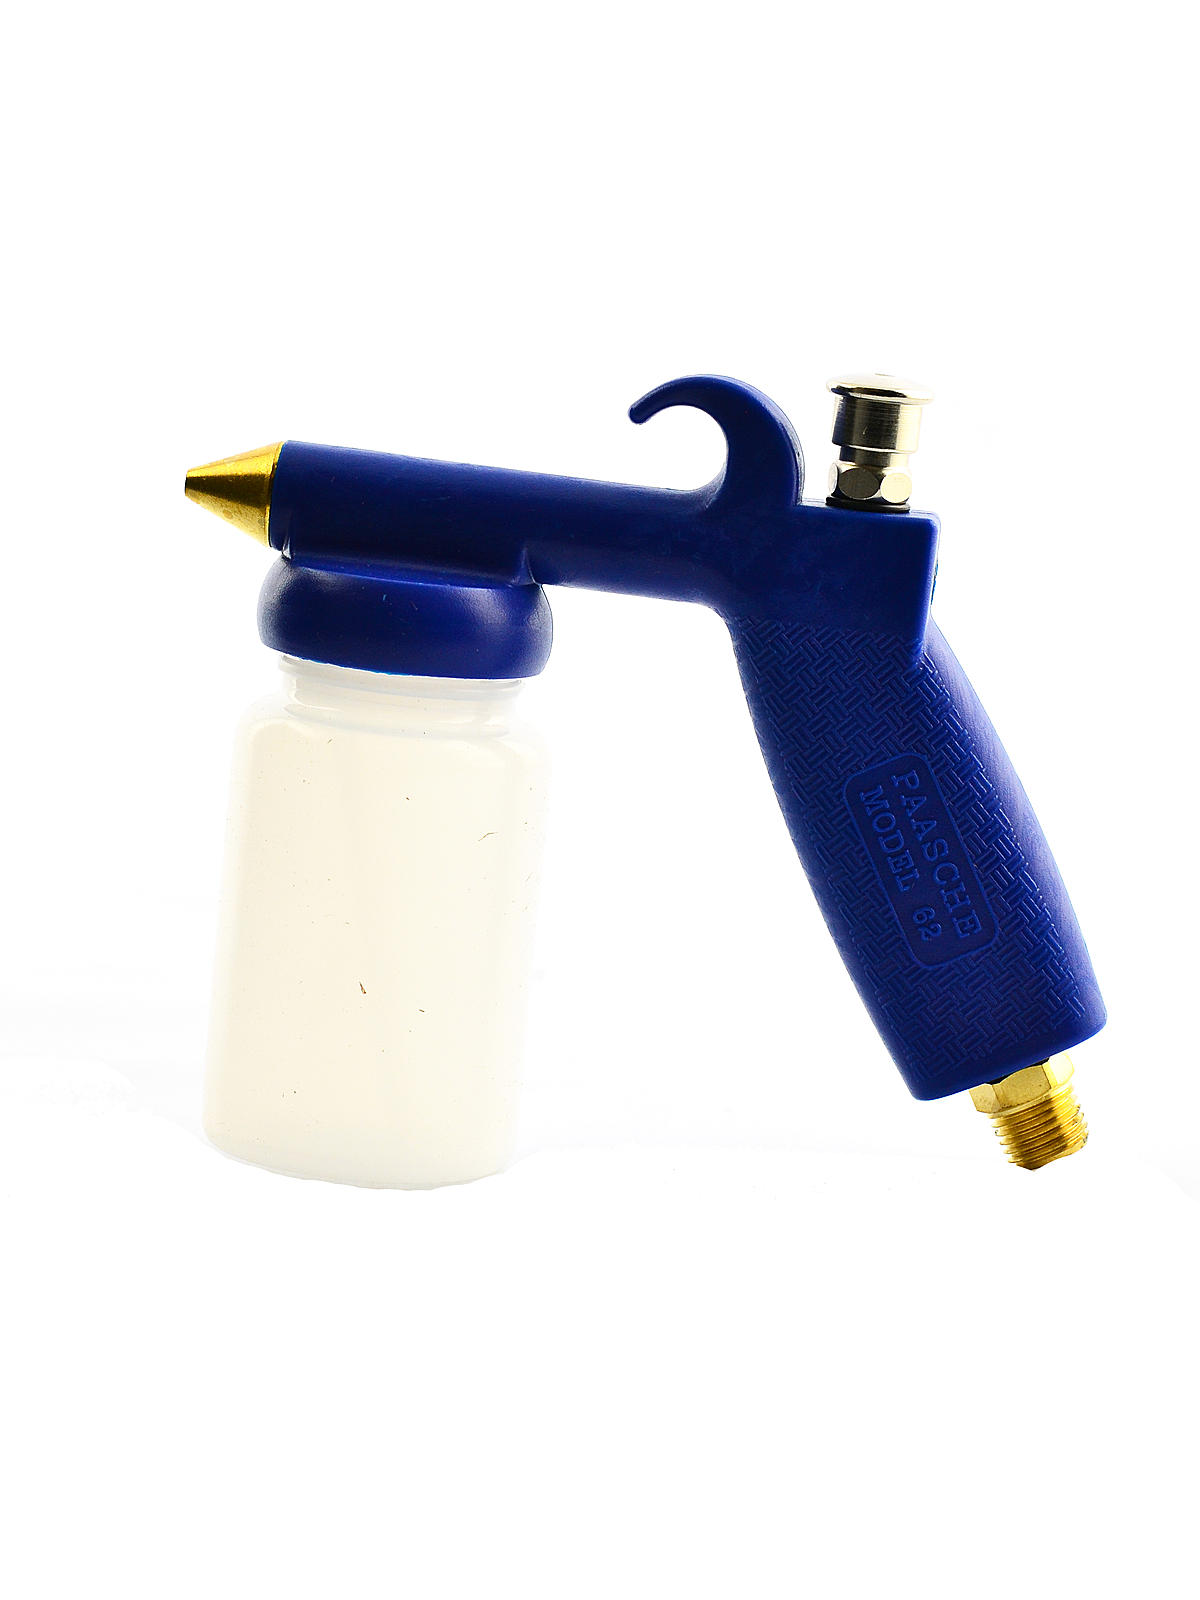 62 Sprayer No. 62 Sprayer - Low Pressure For Light Fluids